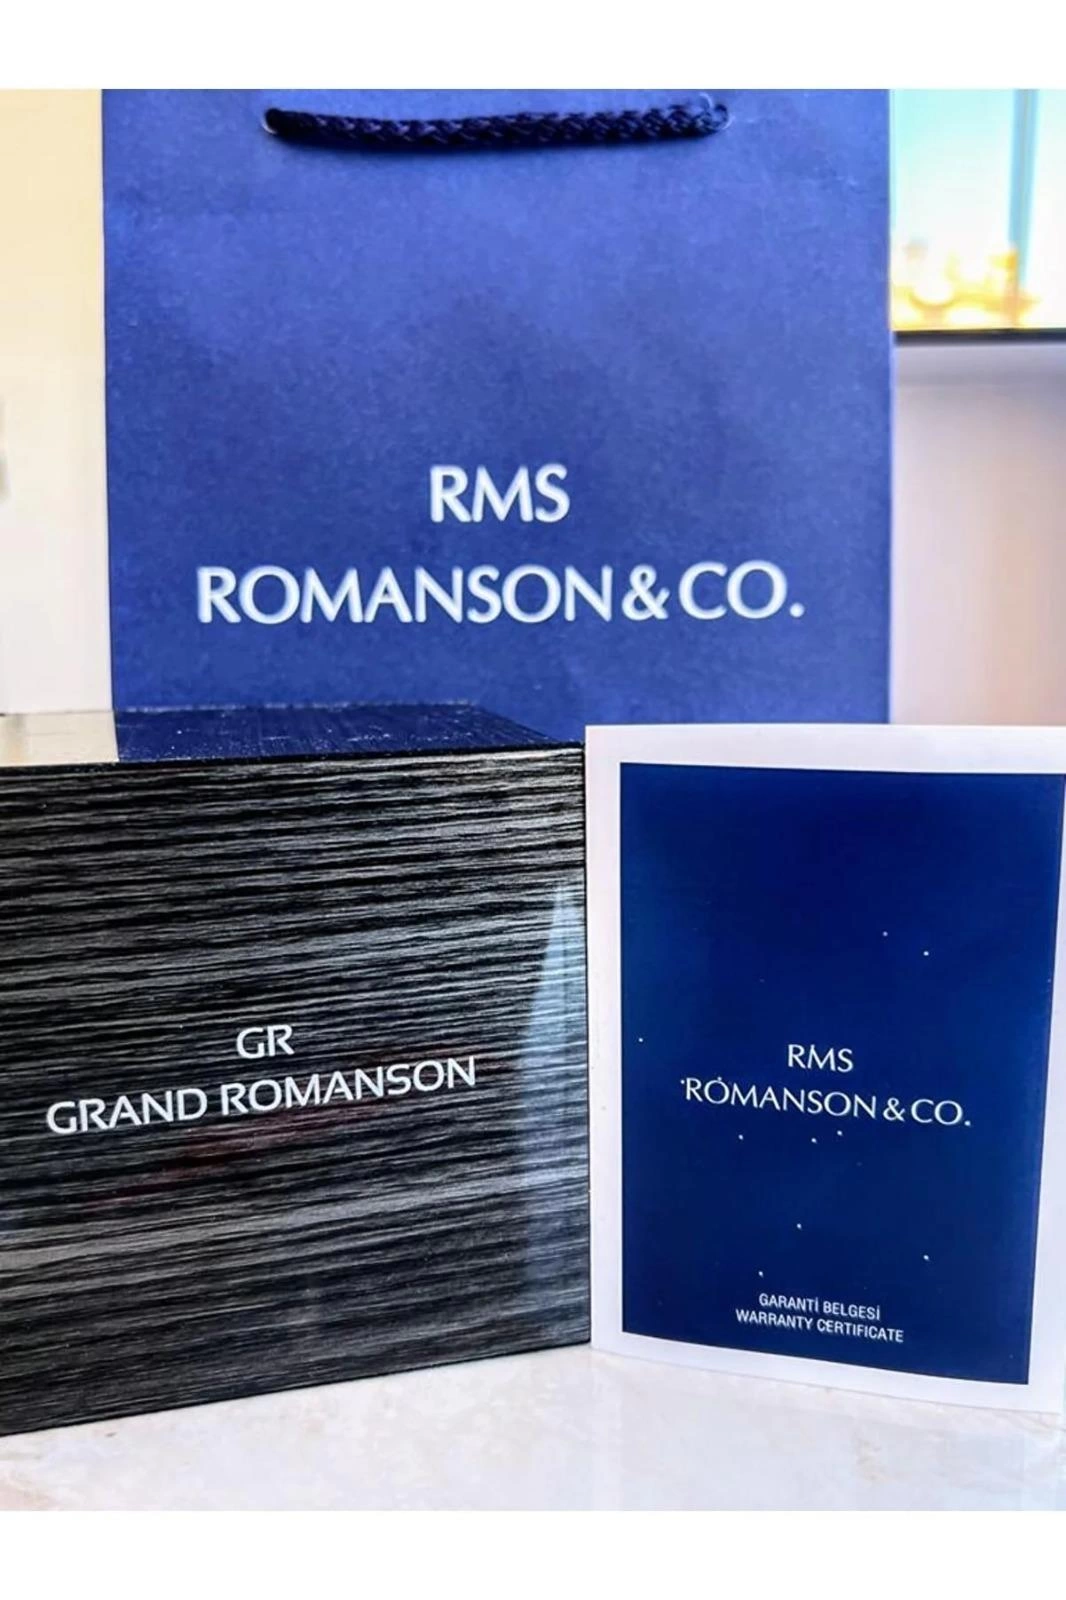 RMS.113 Romanson Özel Seri Takım Elbiseye Özel Tasarım Damat & Nişan Saati  Kararmaz Renk Atmaz